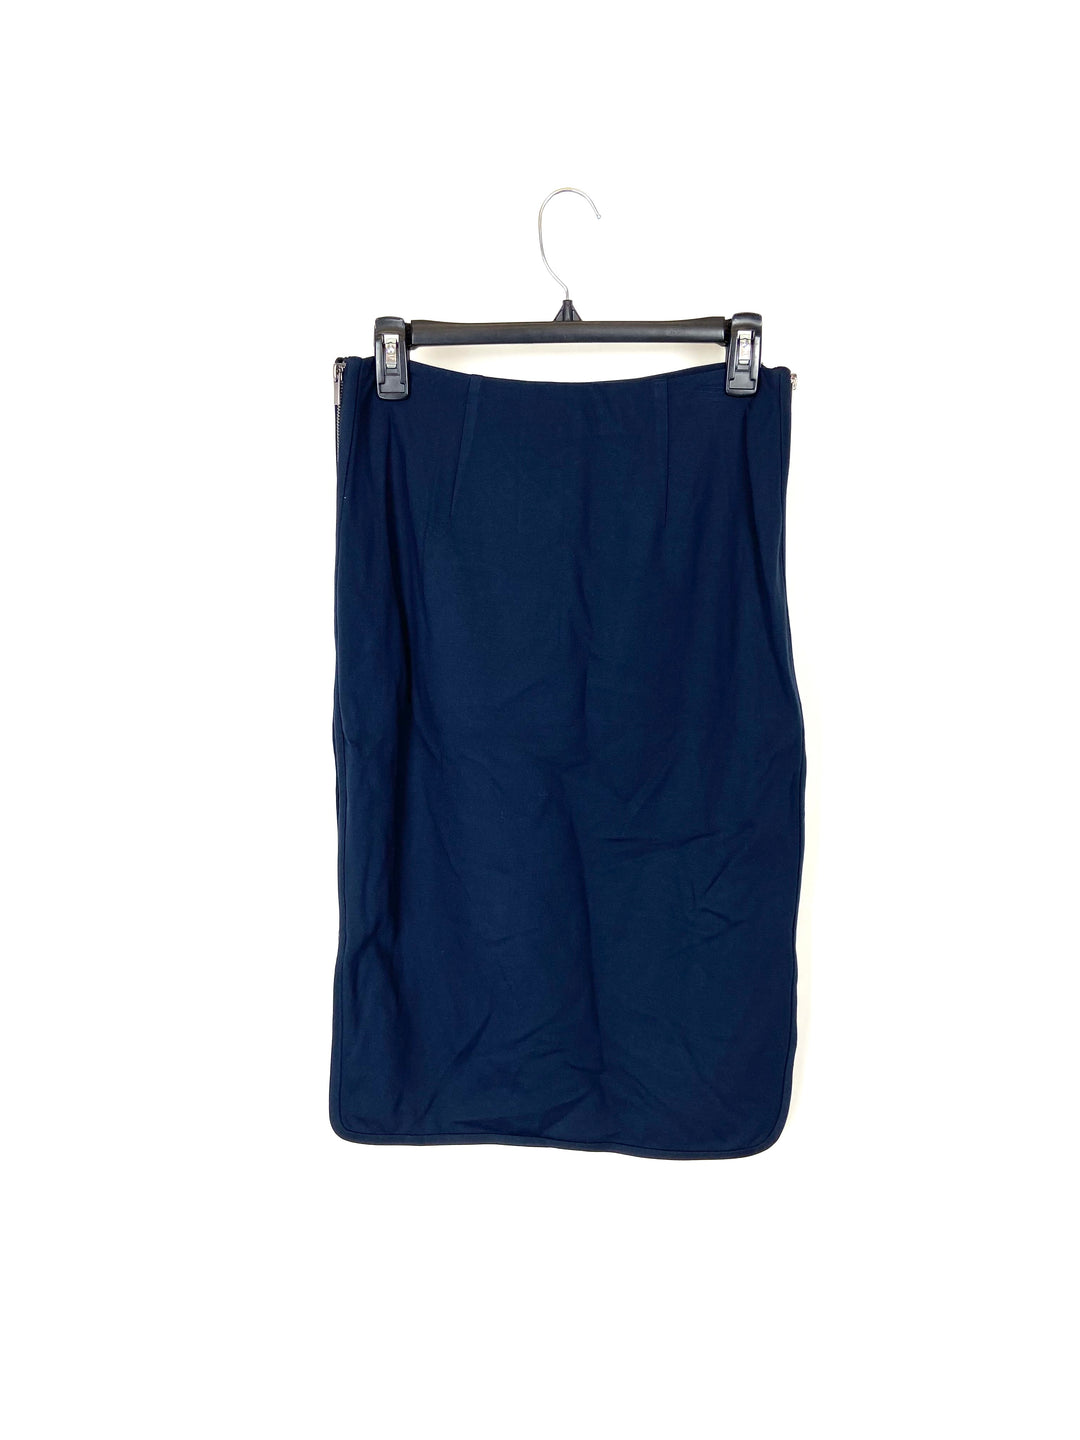 Navy Zip Up Skirt - Size 6